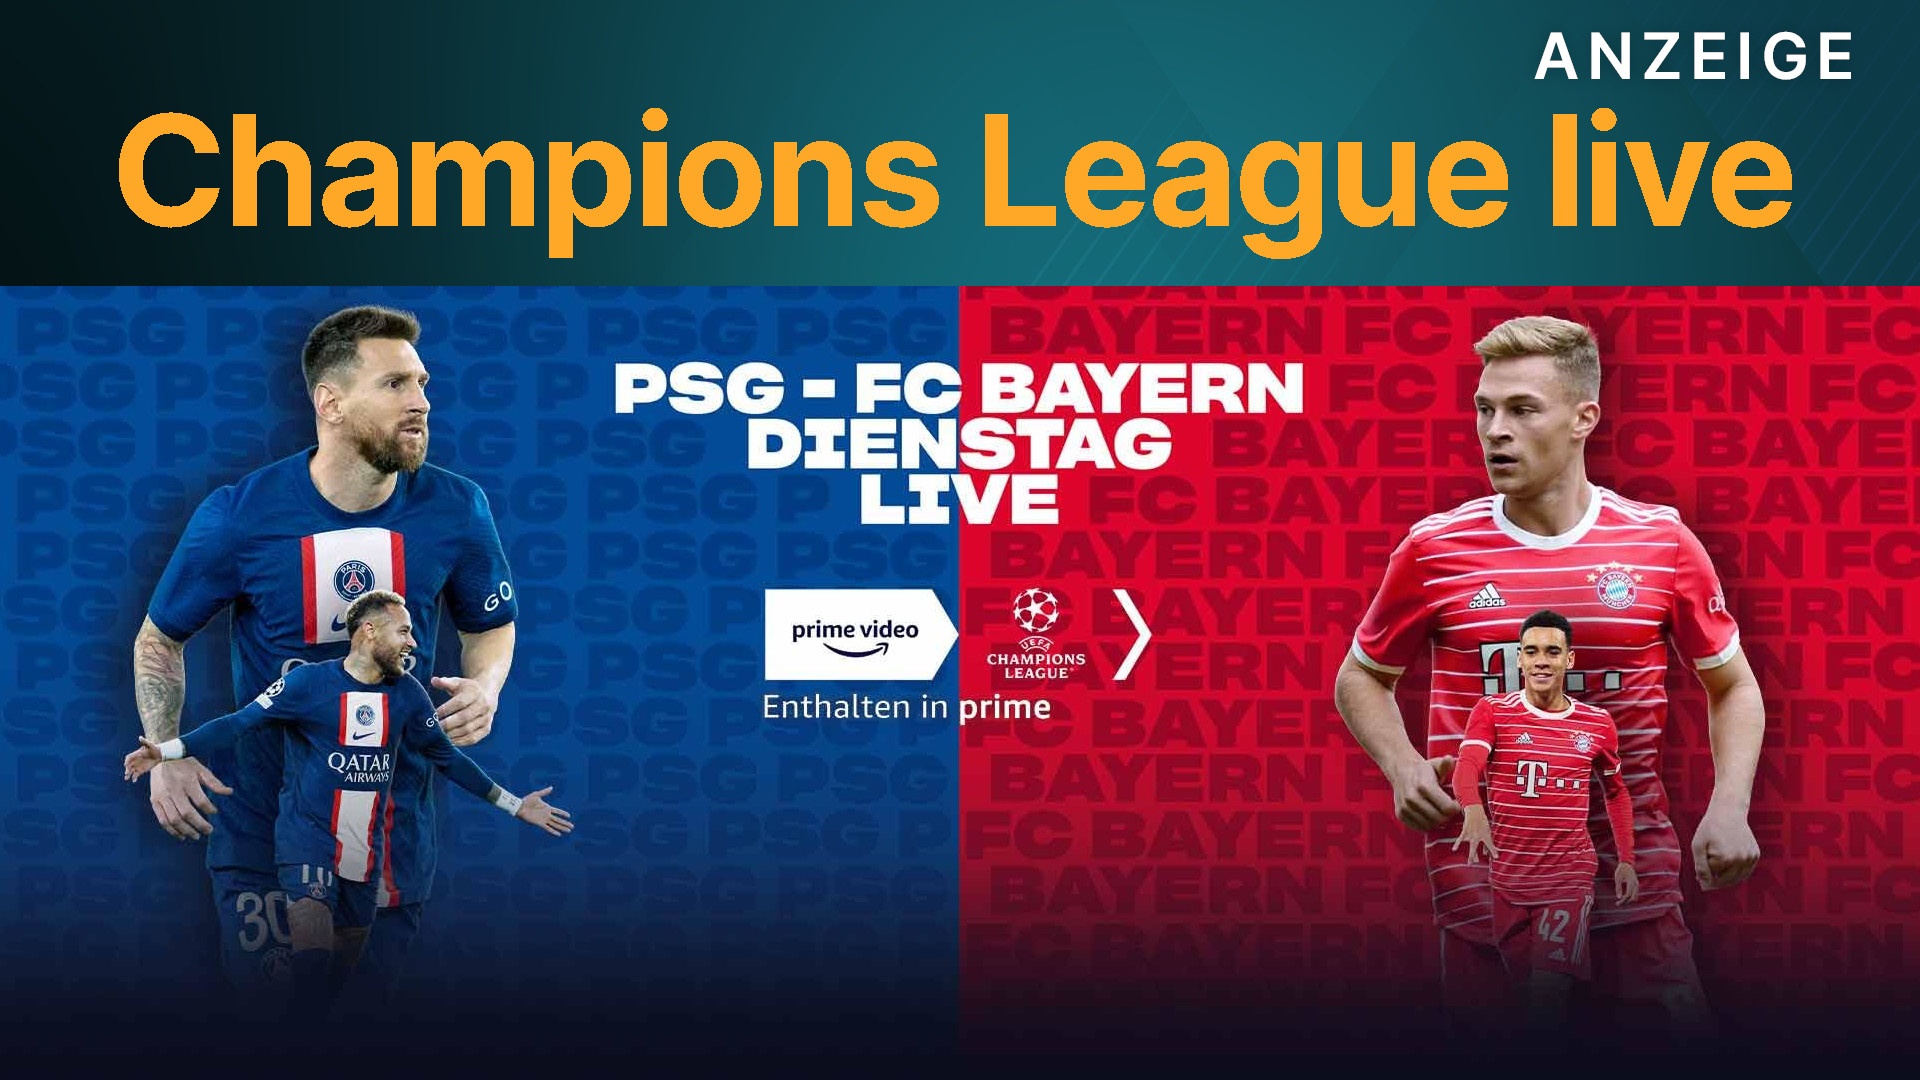 Champions League live FC Bayern gegen PSG heute Abend nur bei Amazon Prime